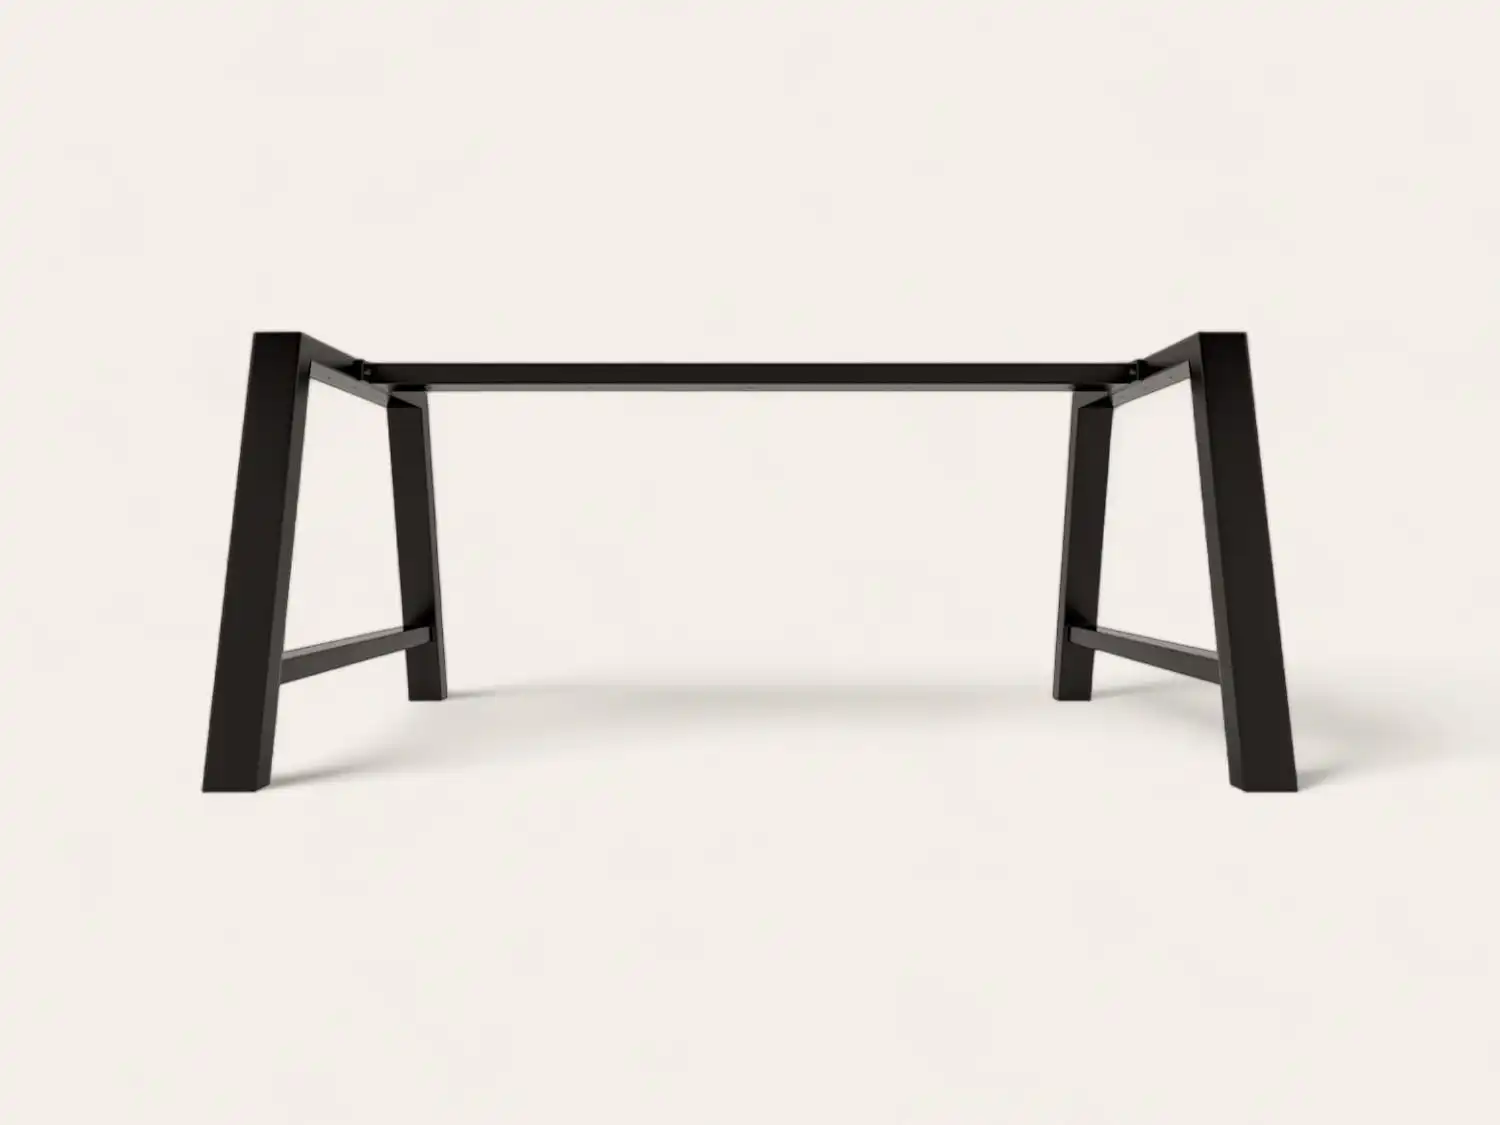 Une table en métal noir sur fond blanc.